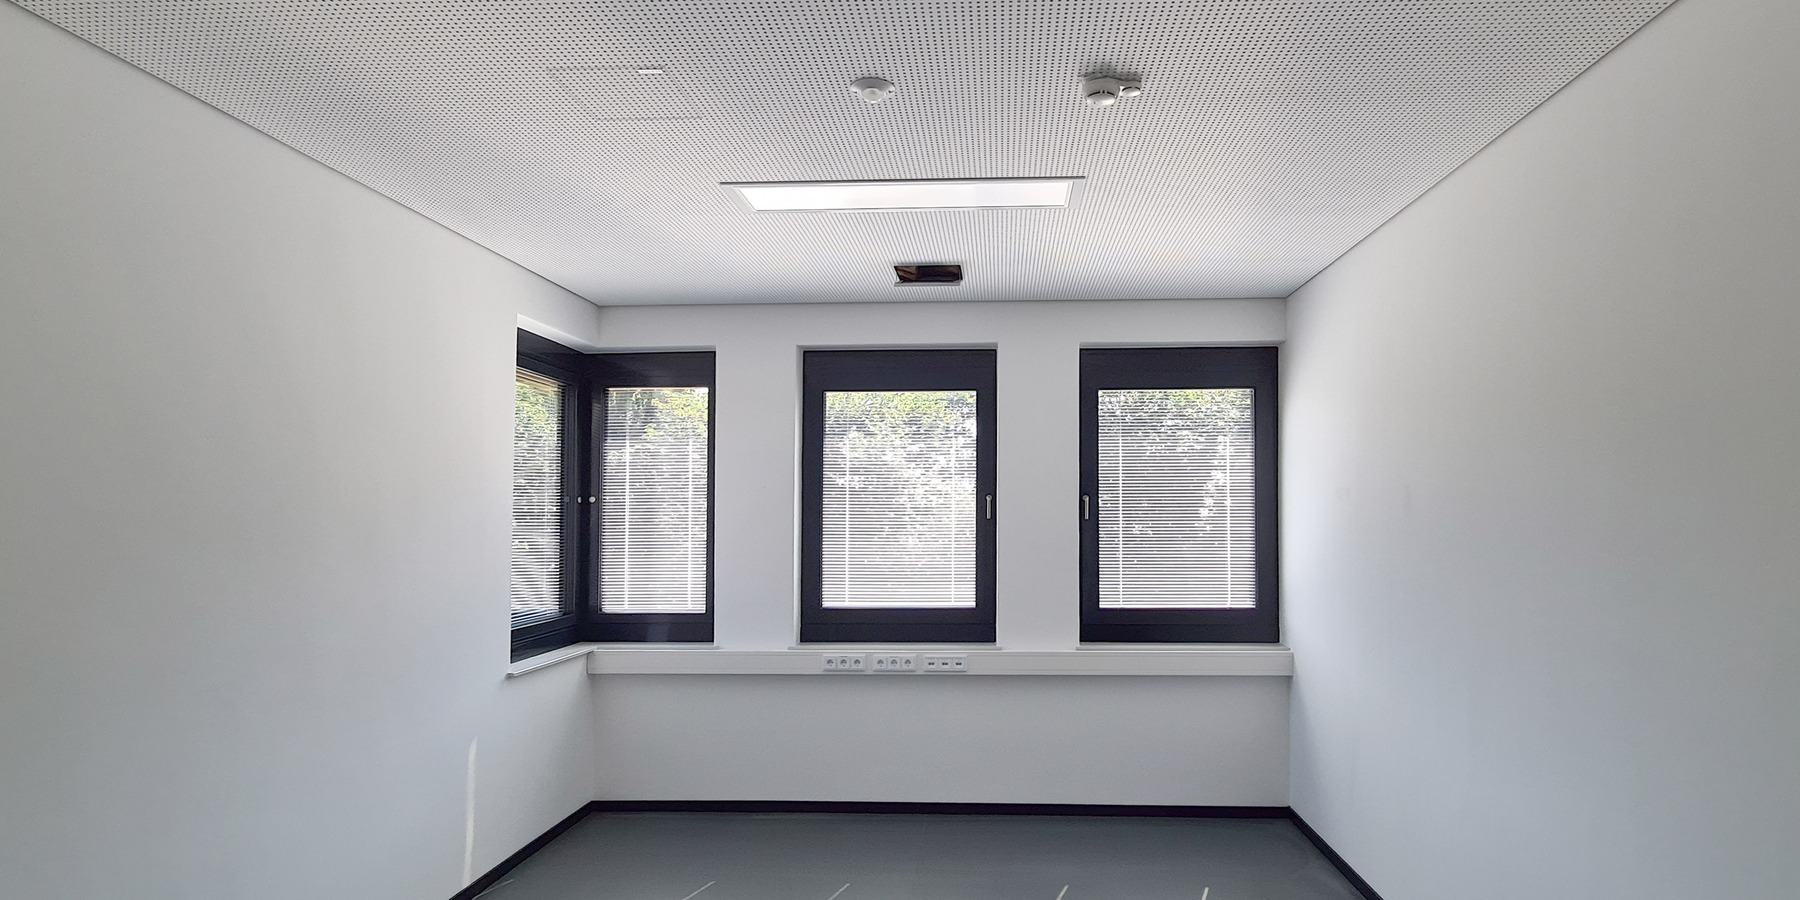 Bürozimmer - Fenster mit integrierter Sonnenschutzjalousie © 2020 Staatliches Bau- und Liegenschaftsamt Neubrandenburg